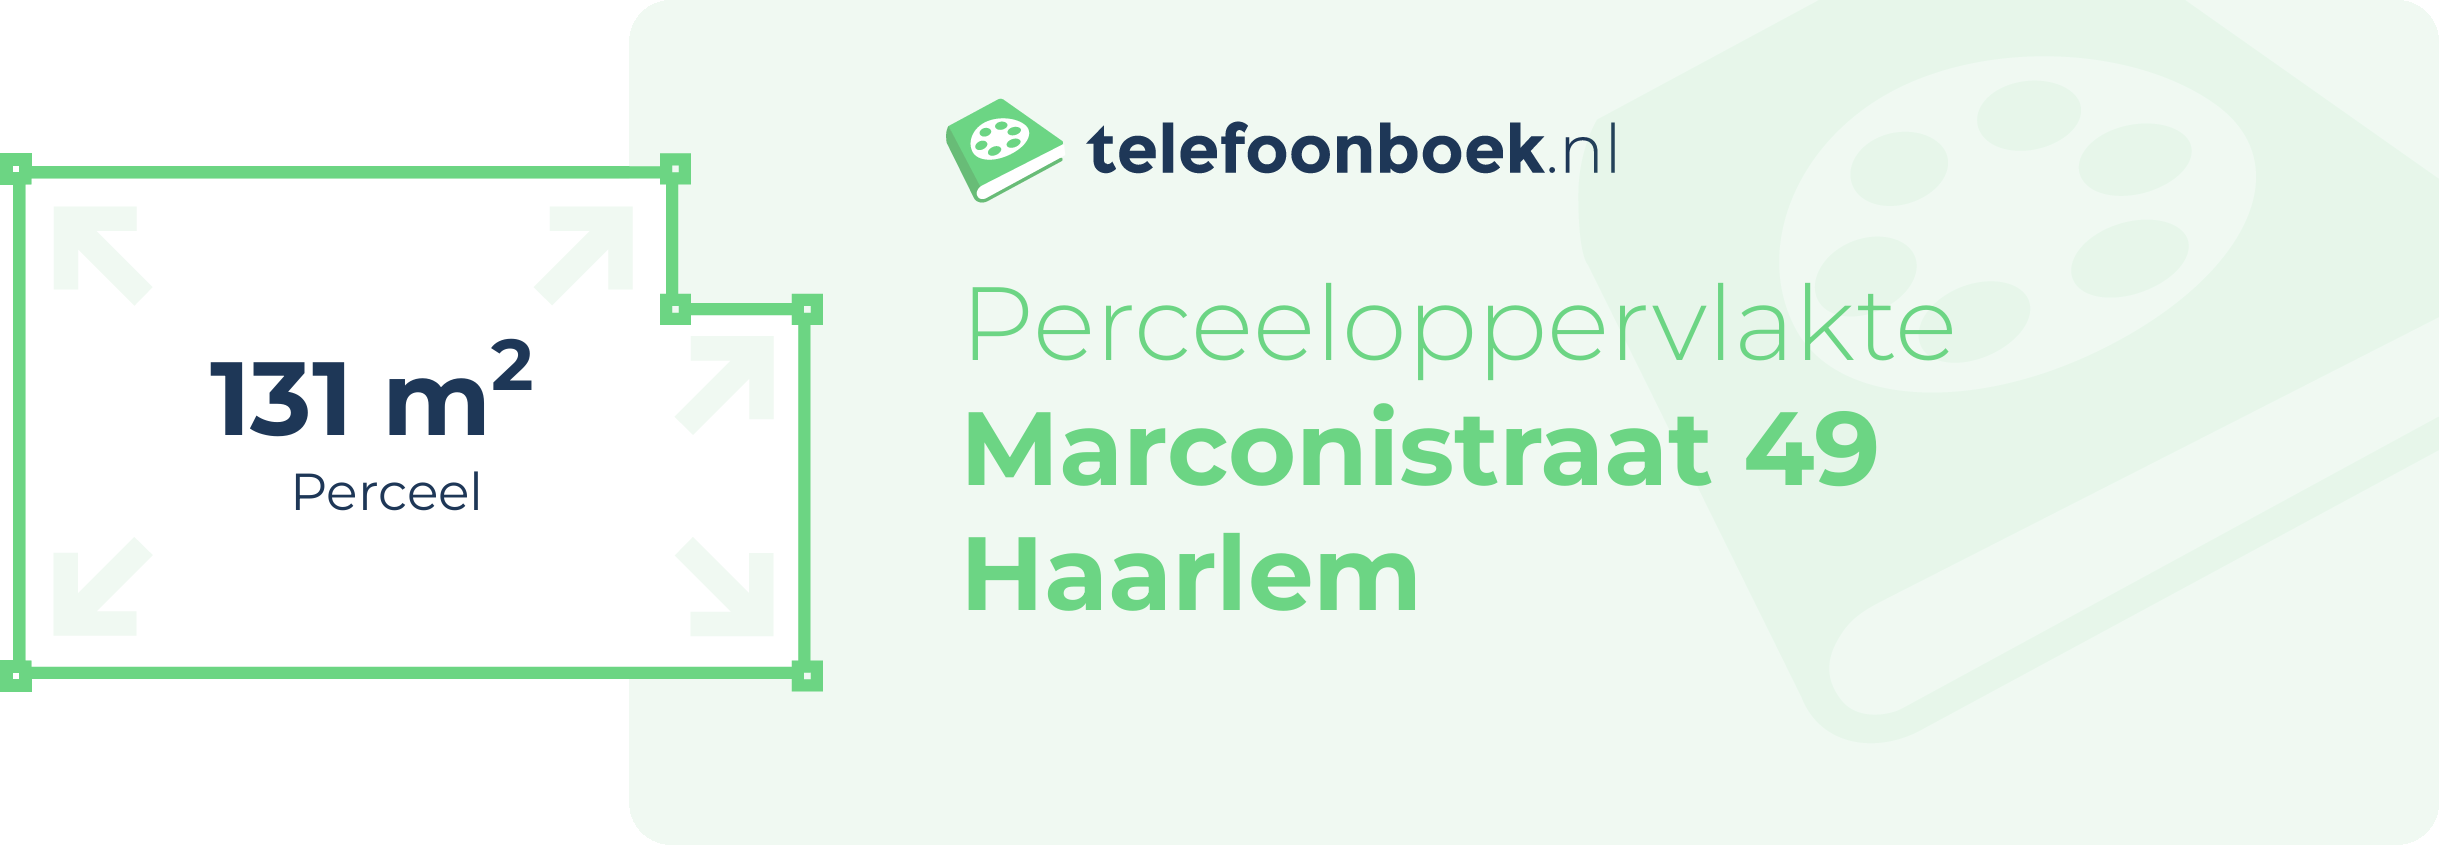 Perceeloppervlakte Marconistraat 49 Haarlem